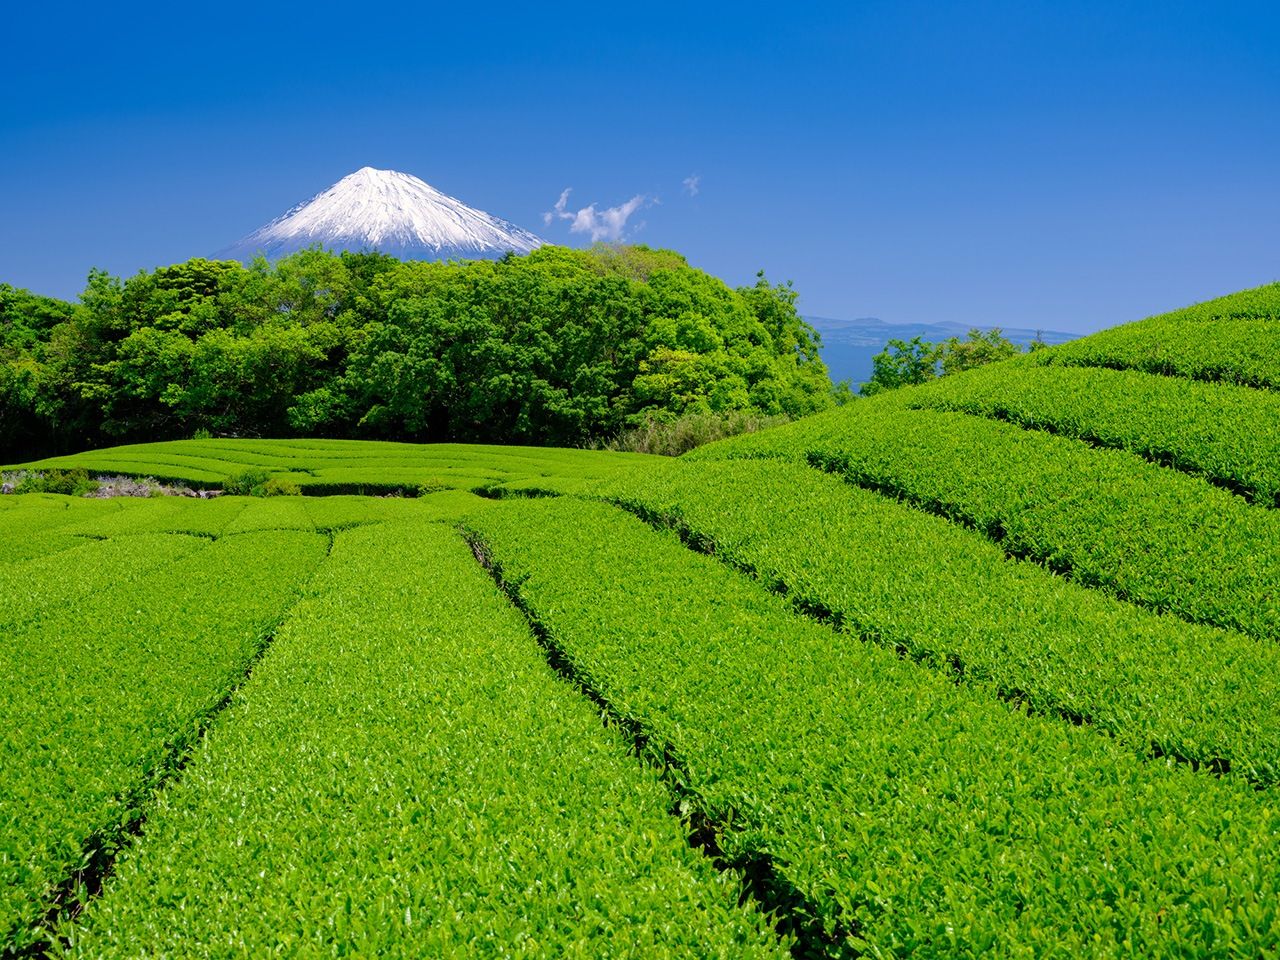 مزارع شاي في محافظة شيزوؤكا، ويظهر في الخلفية جبل فوجي (حقوق الصورة لبيكستا)